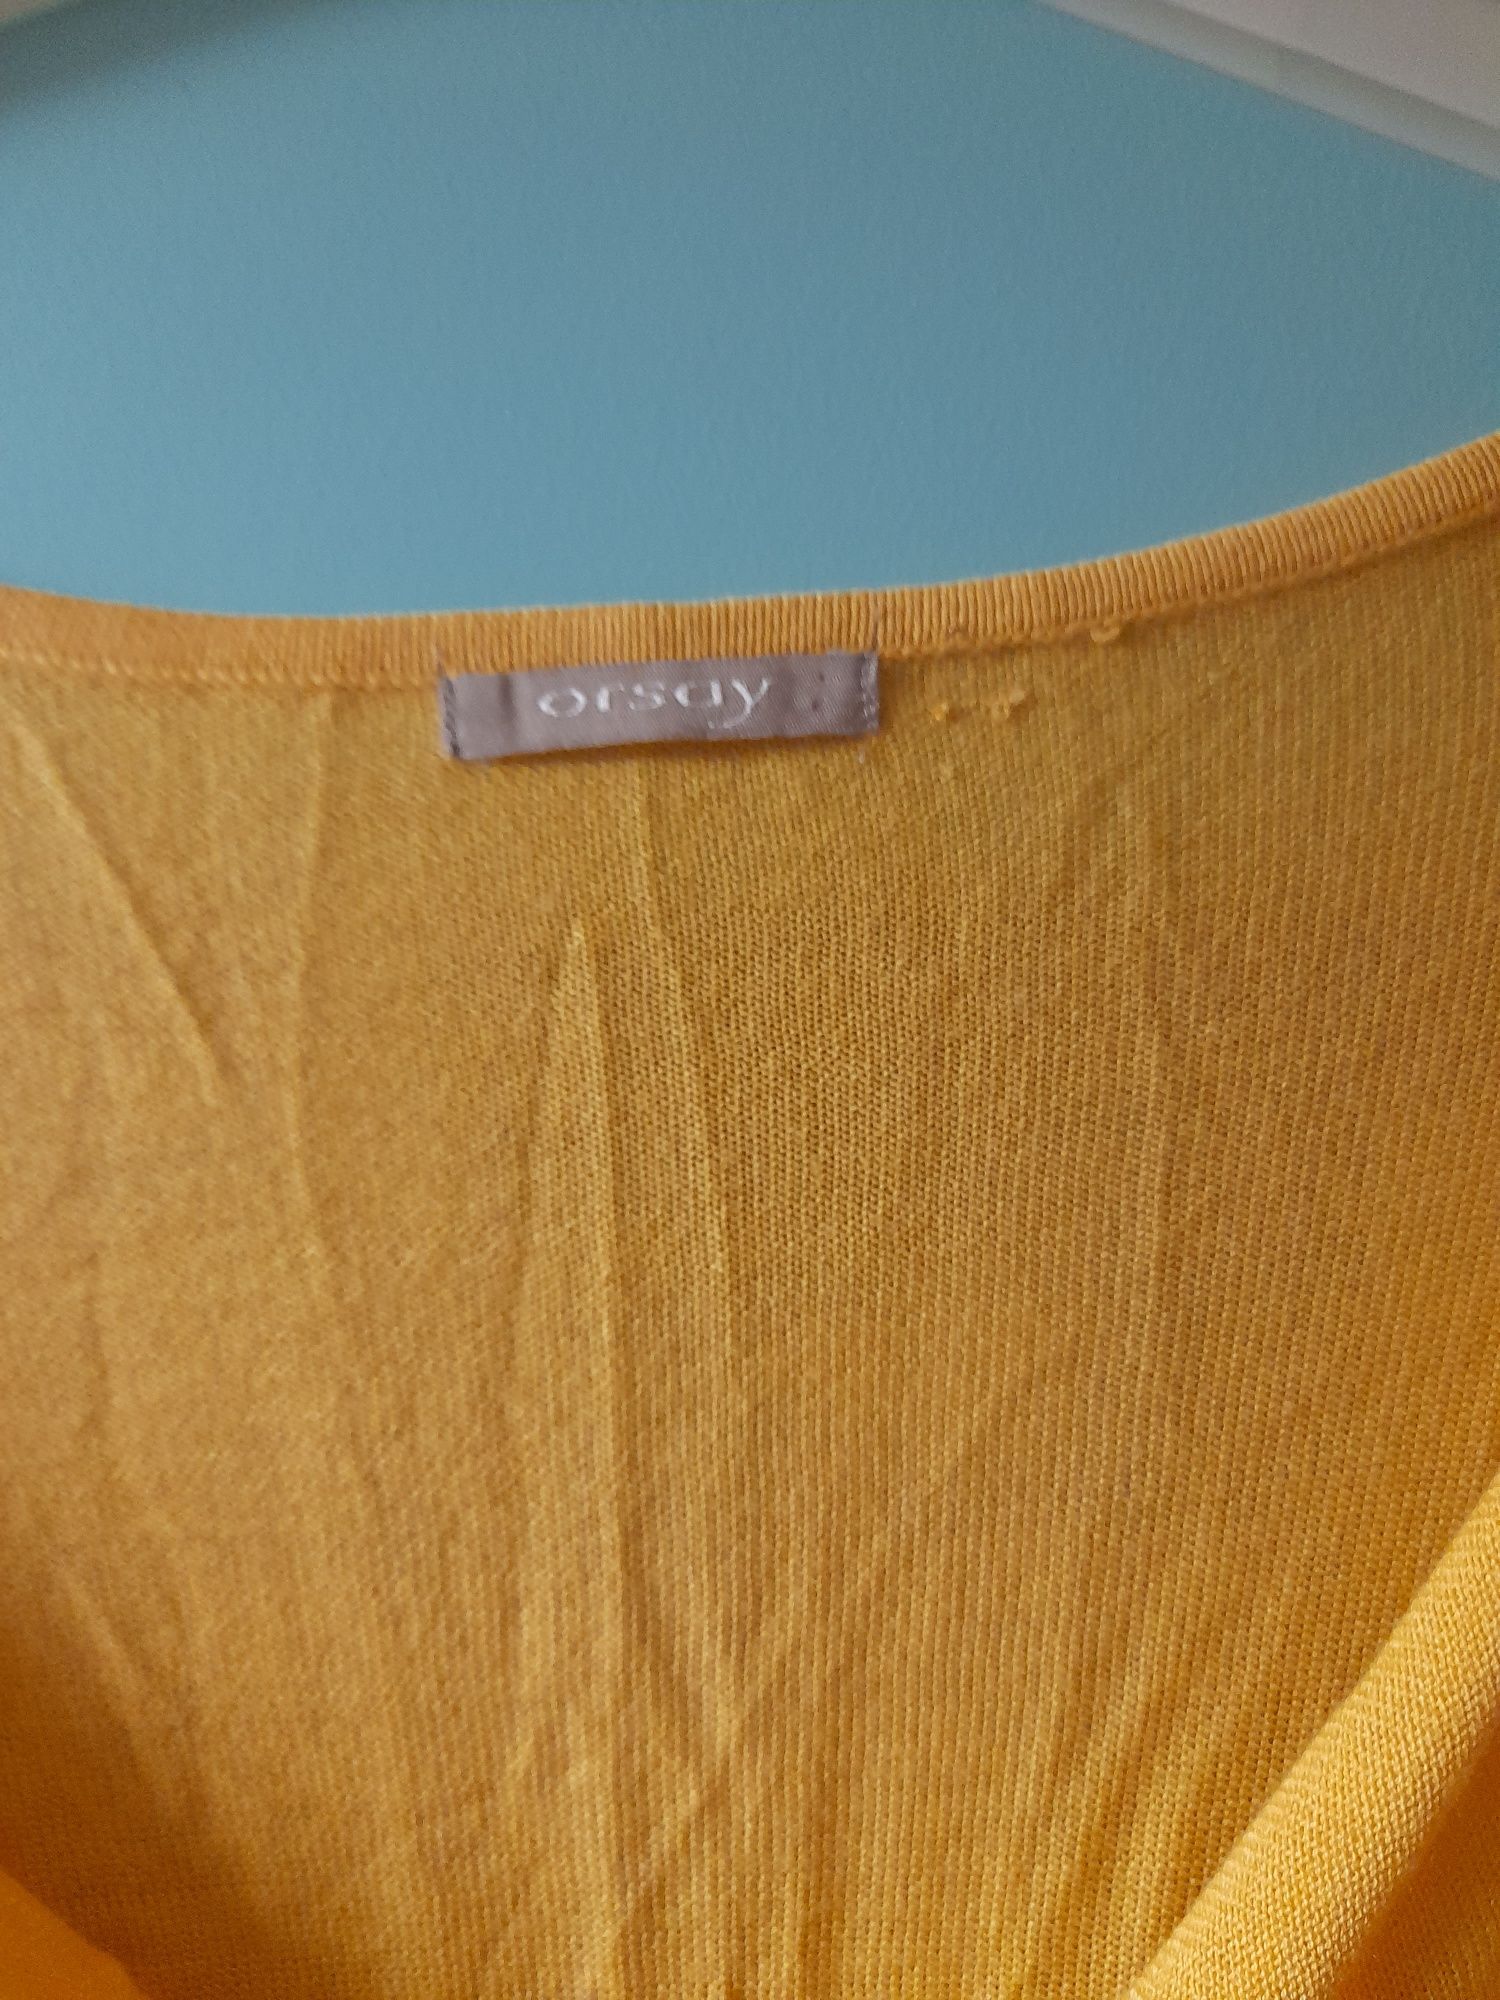 Sweter damski rozmiar XL